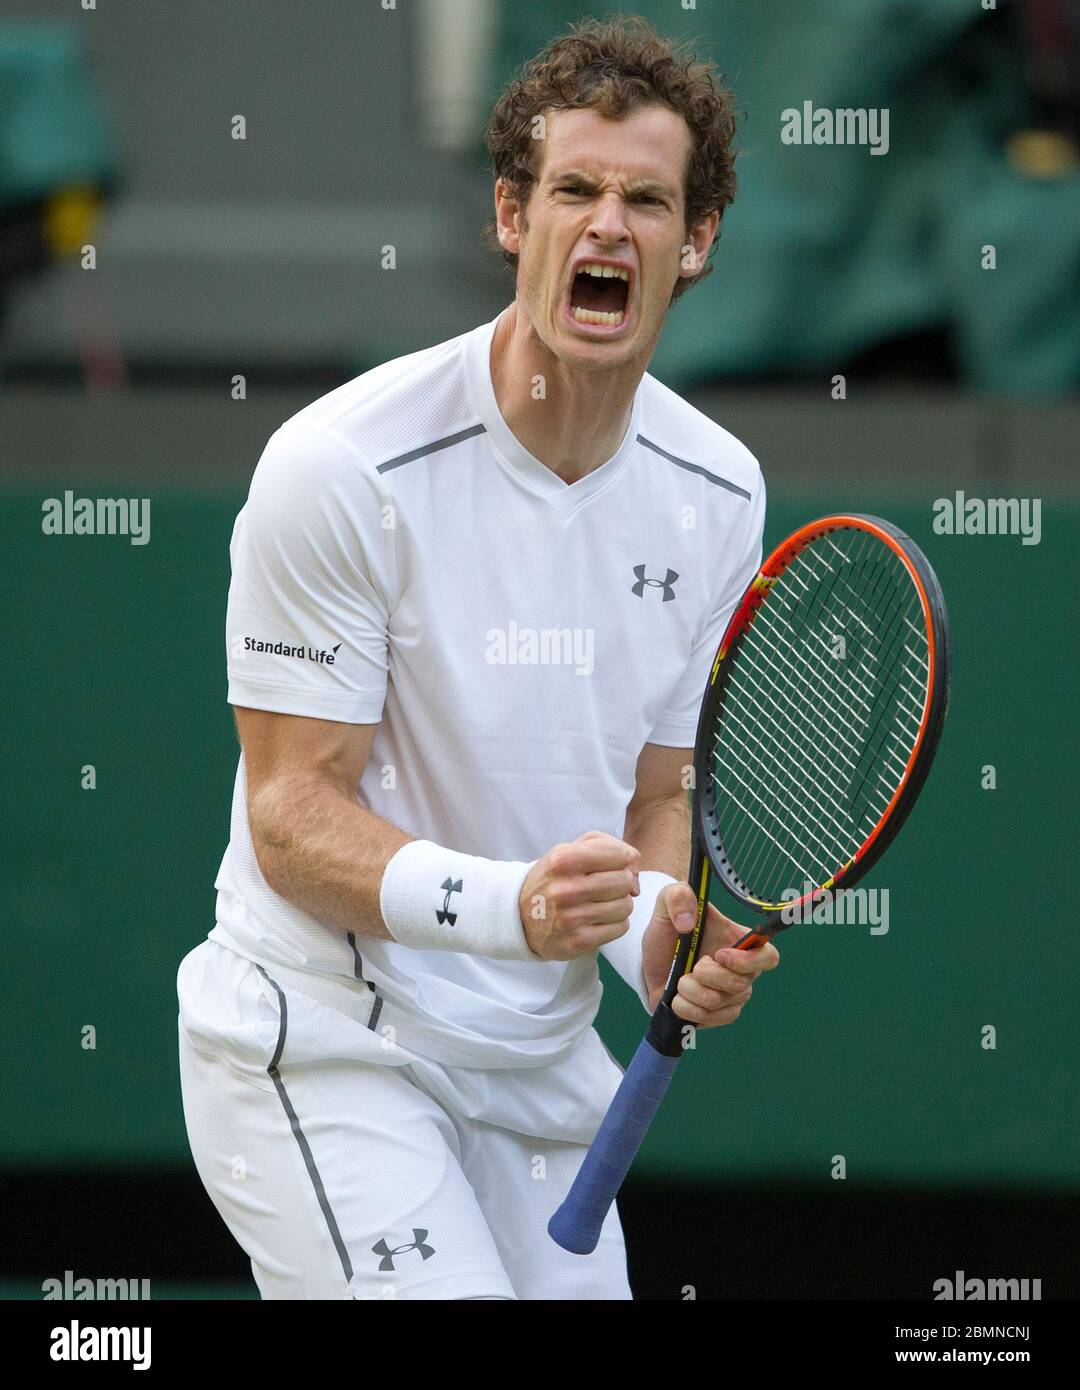 4 Luglio 2015, Wimbledon Championships, Londra. Terzo round di Mens, Centre Court, Andy Murray (GBR) celebra contro Andreas Seppi (ITA) Foto Stock